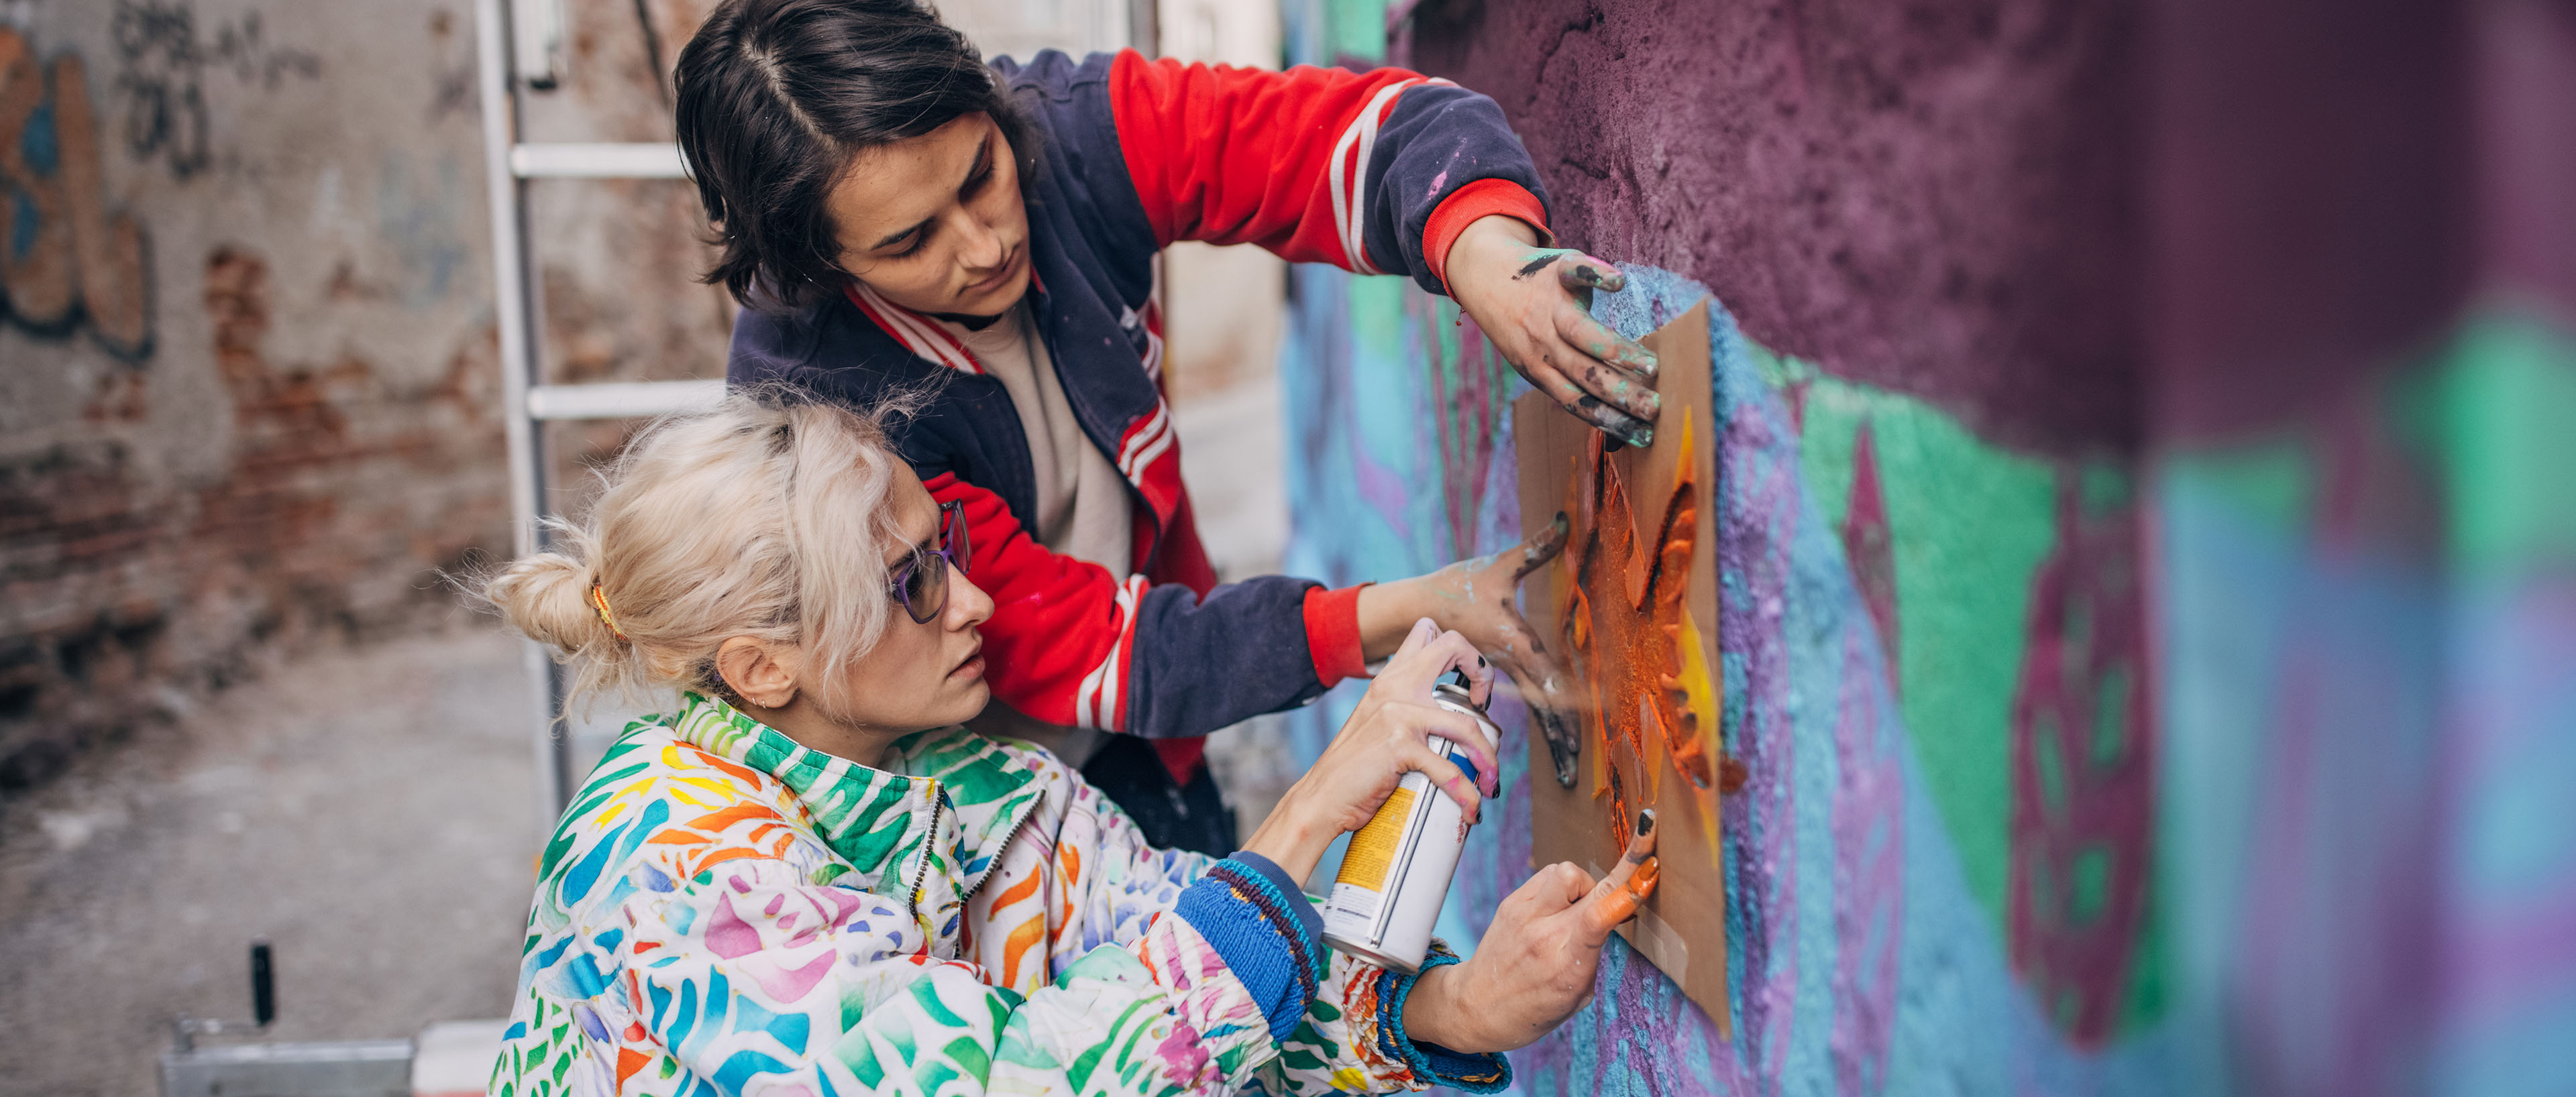 Sokak sanatçıları bina duvarına sprey boya ile resim yapıyor